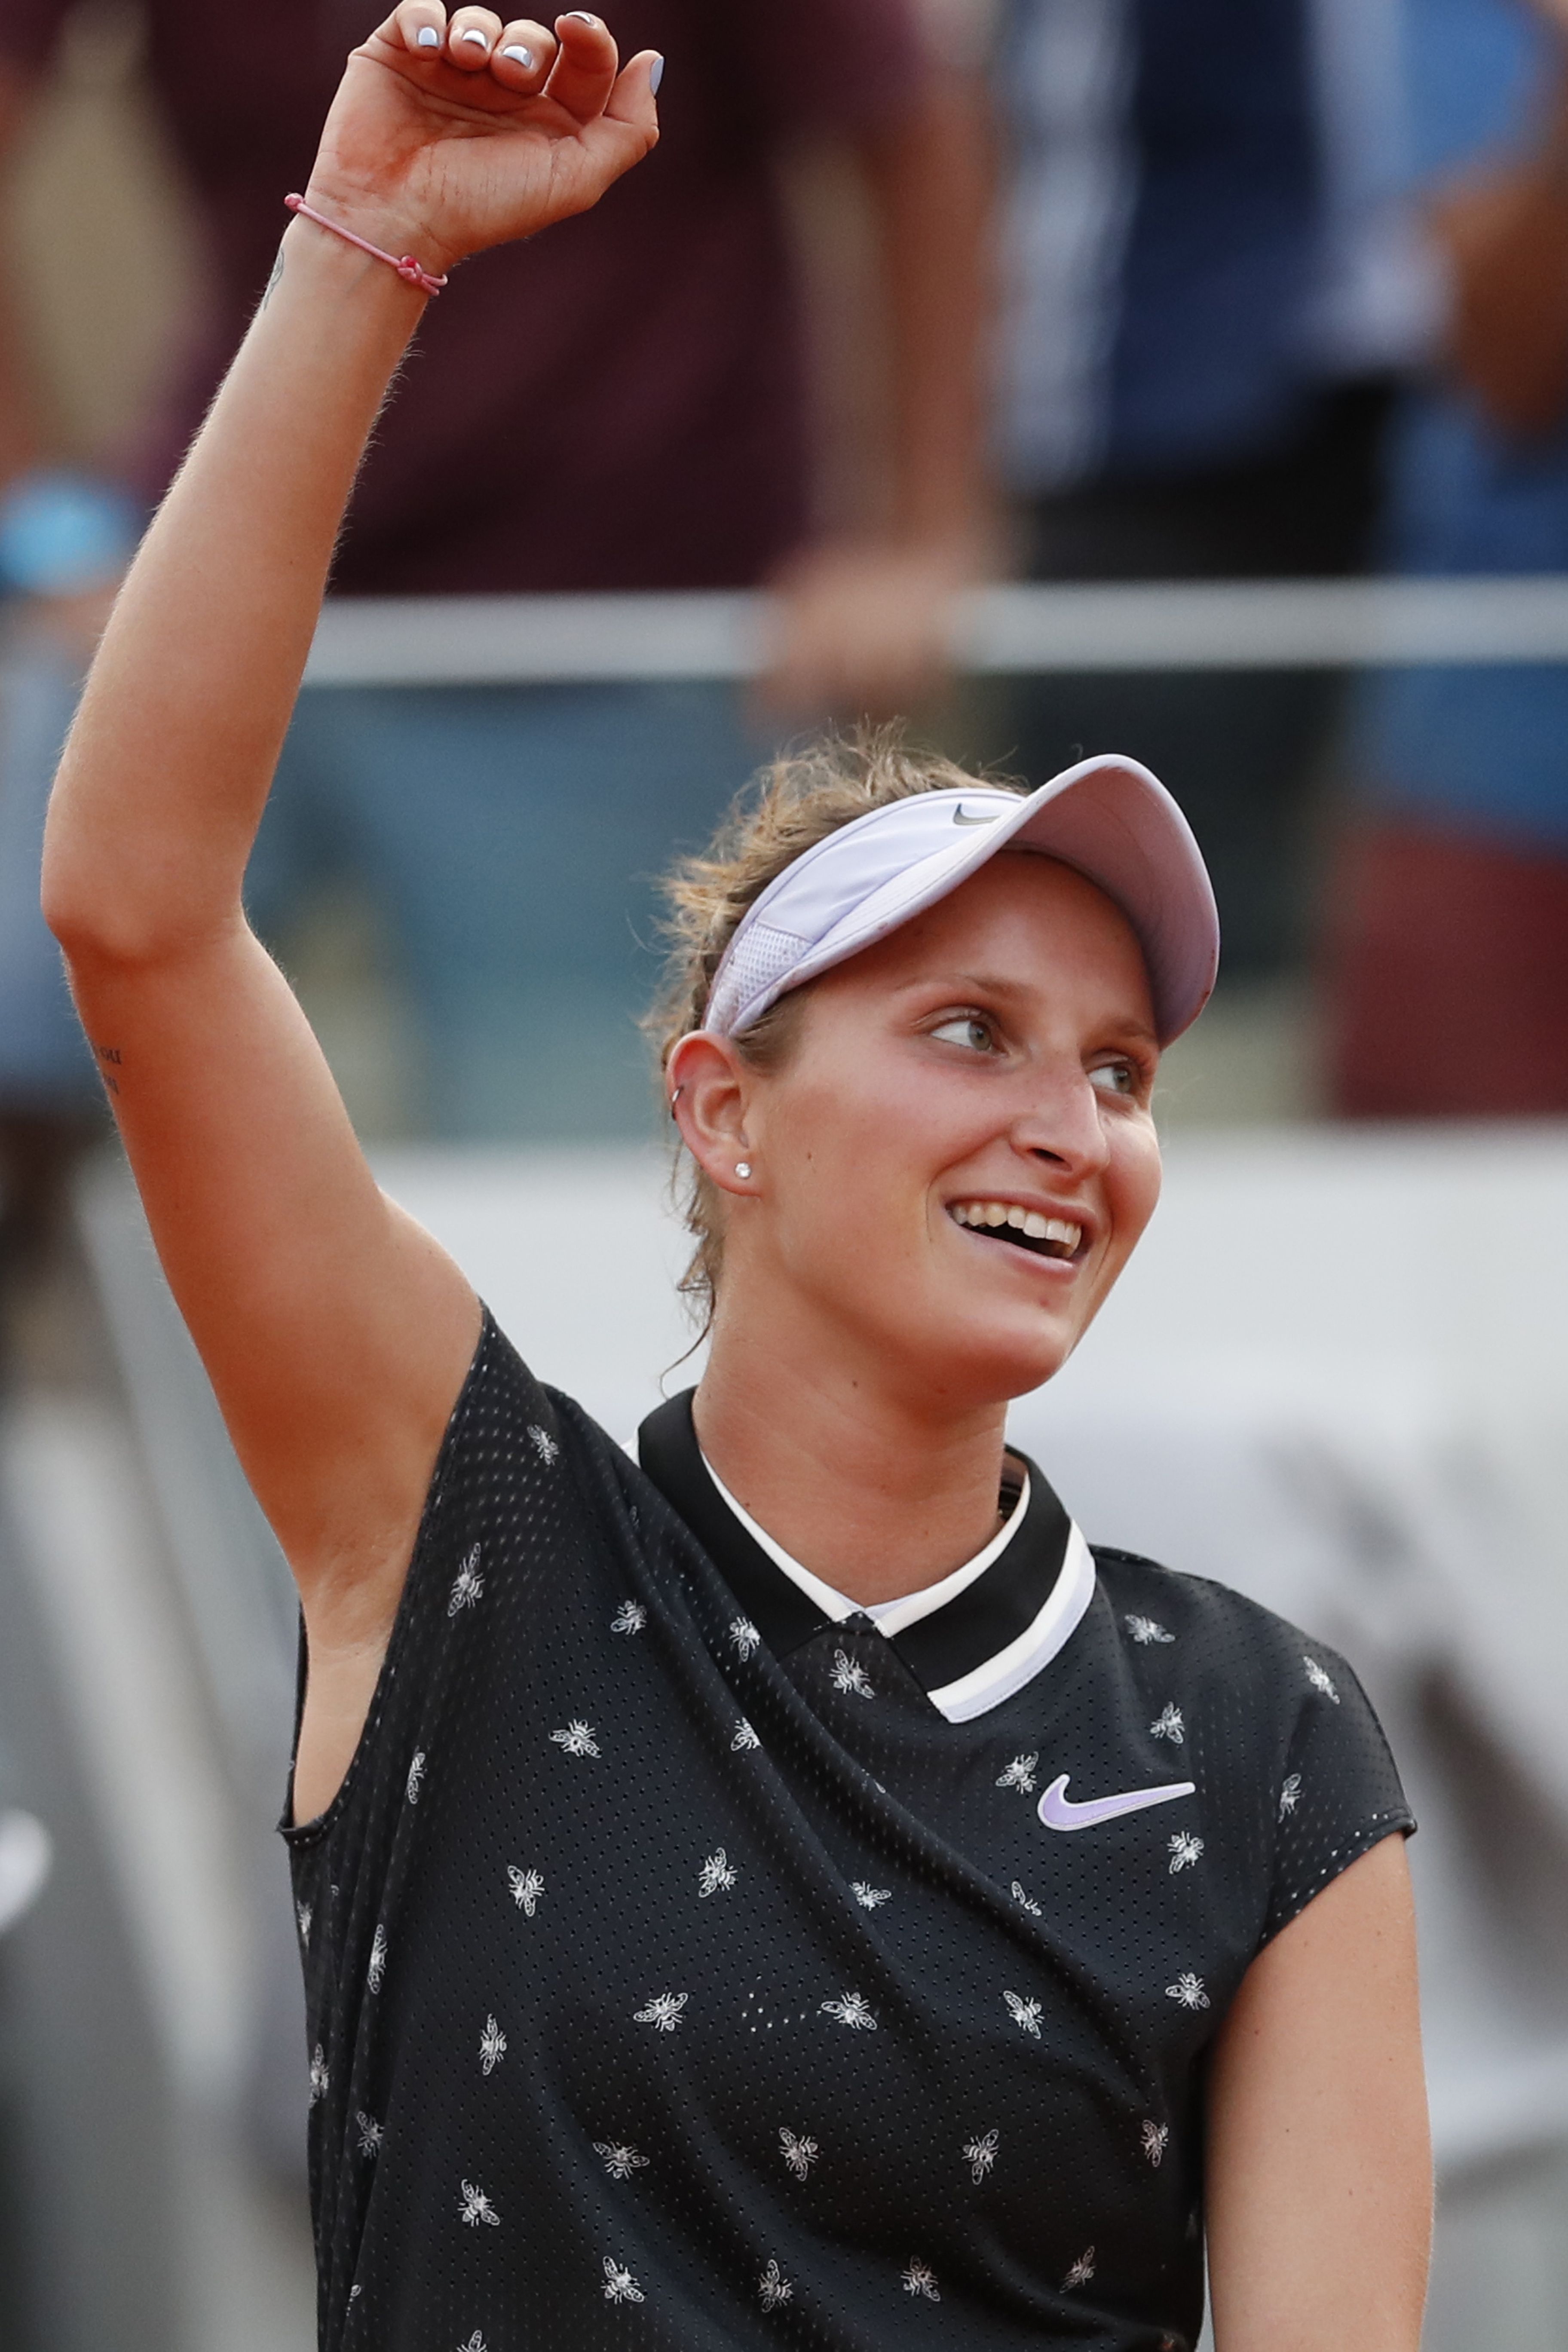 Devatenáctiletá tenistka Vondroušová postupuje do finále French Open!